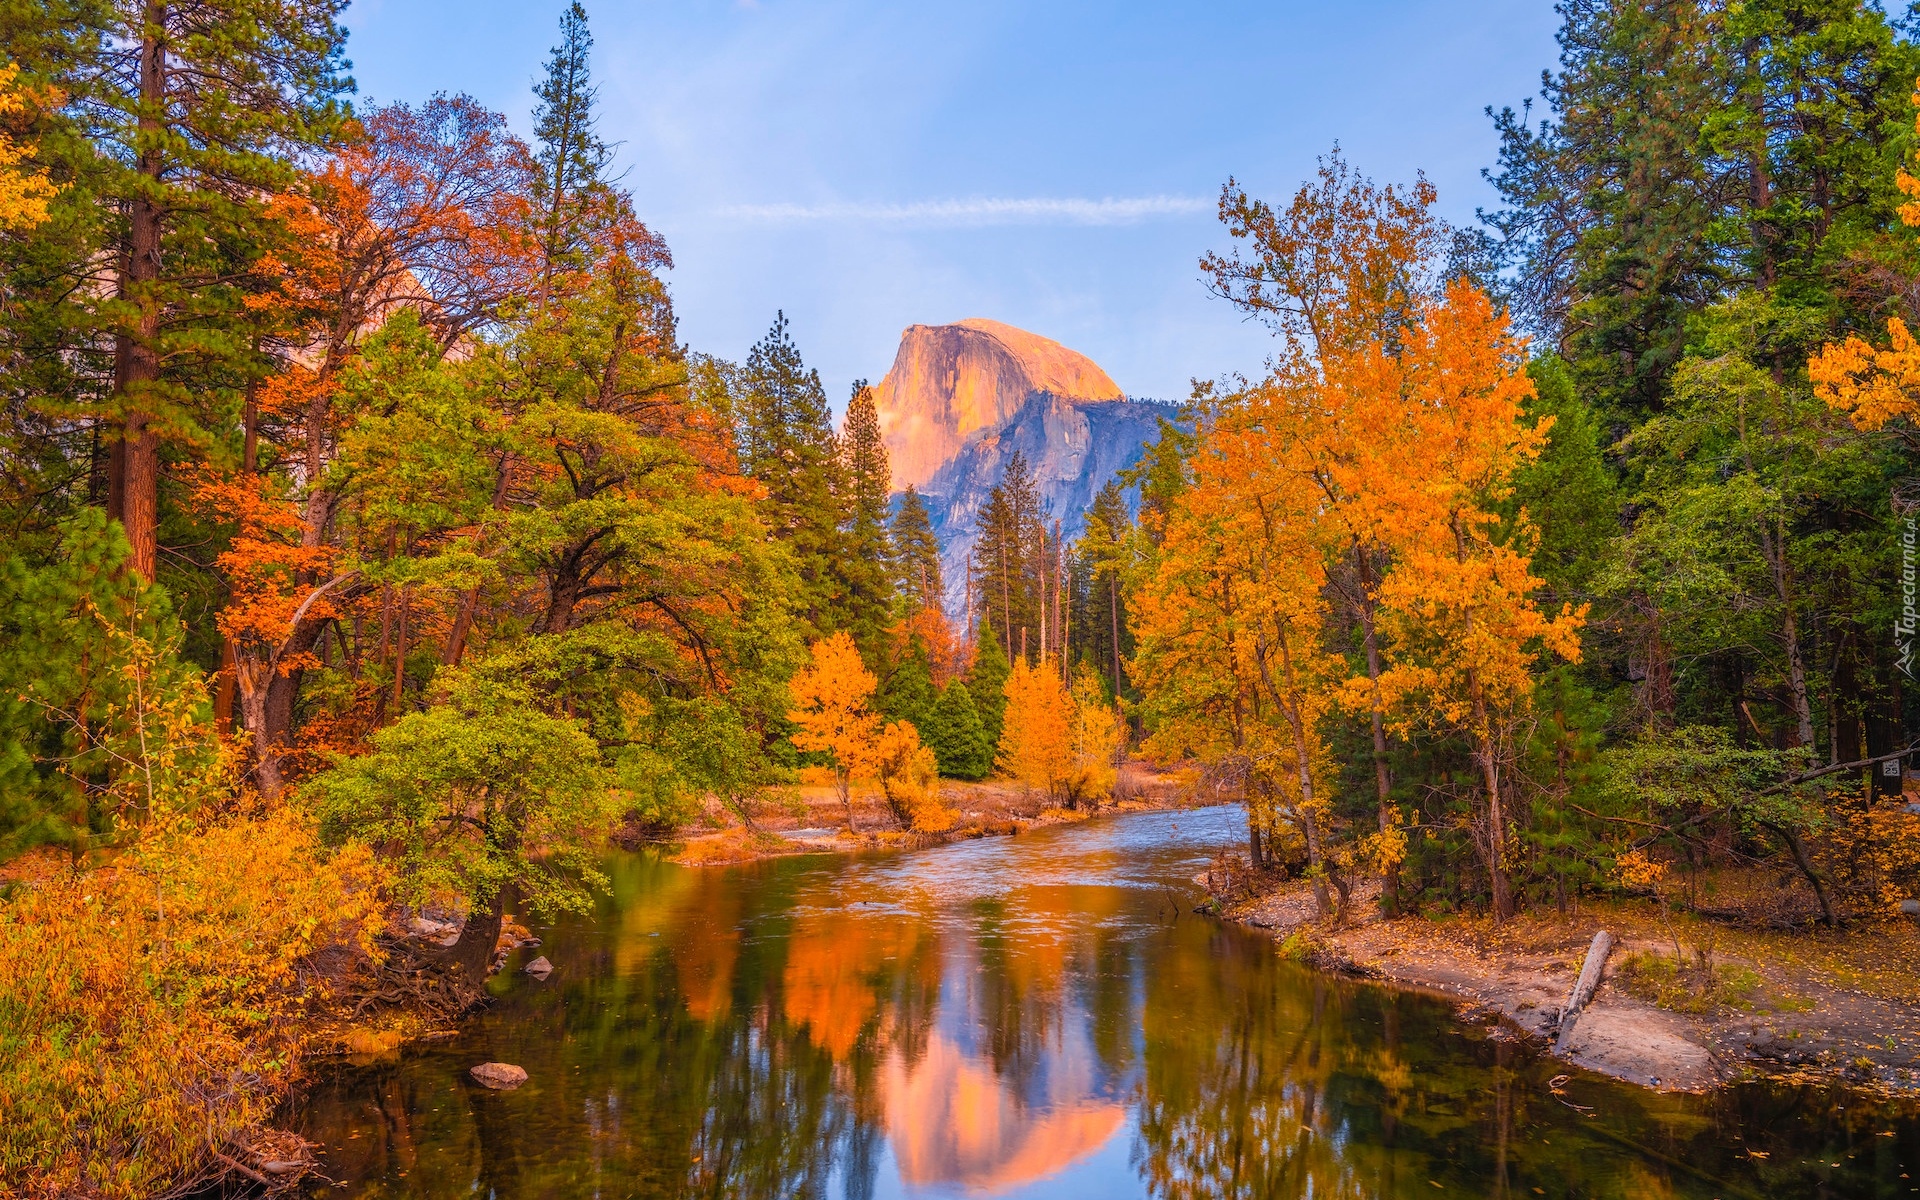 Stany Zjednoczone, Kalifornia, Park Narodowy Yosemite, Jesień, Rzeka, Merced River, Drzewa, Góra Half Dome